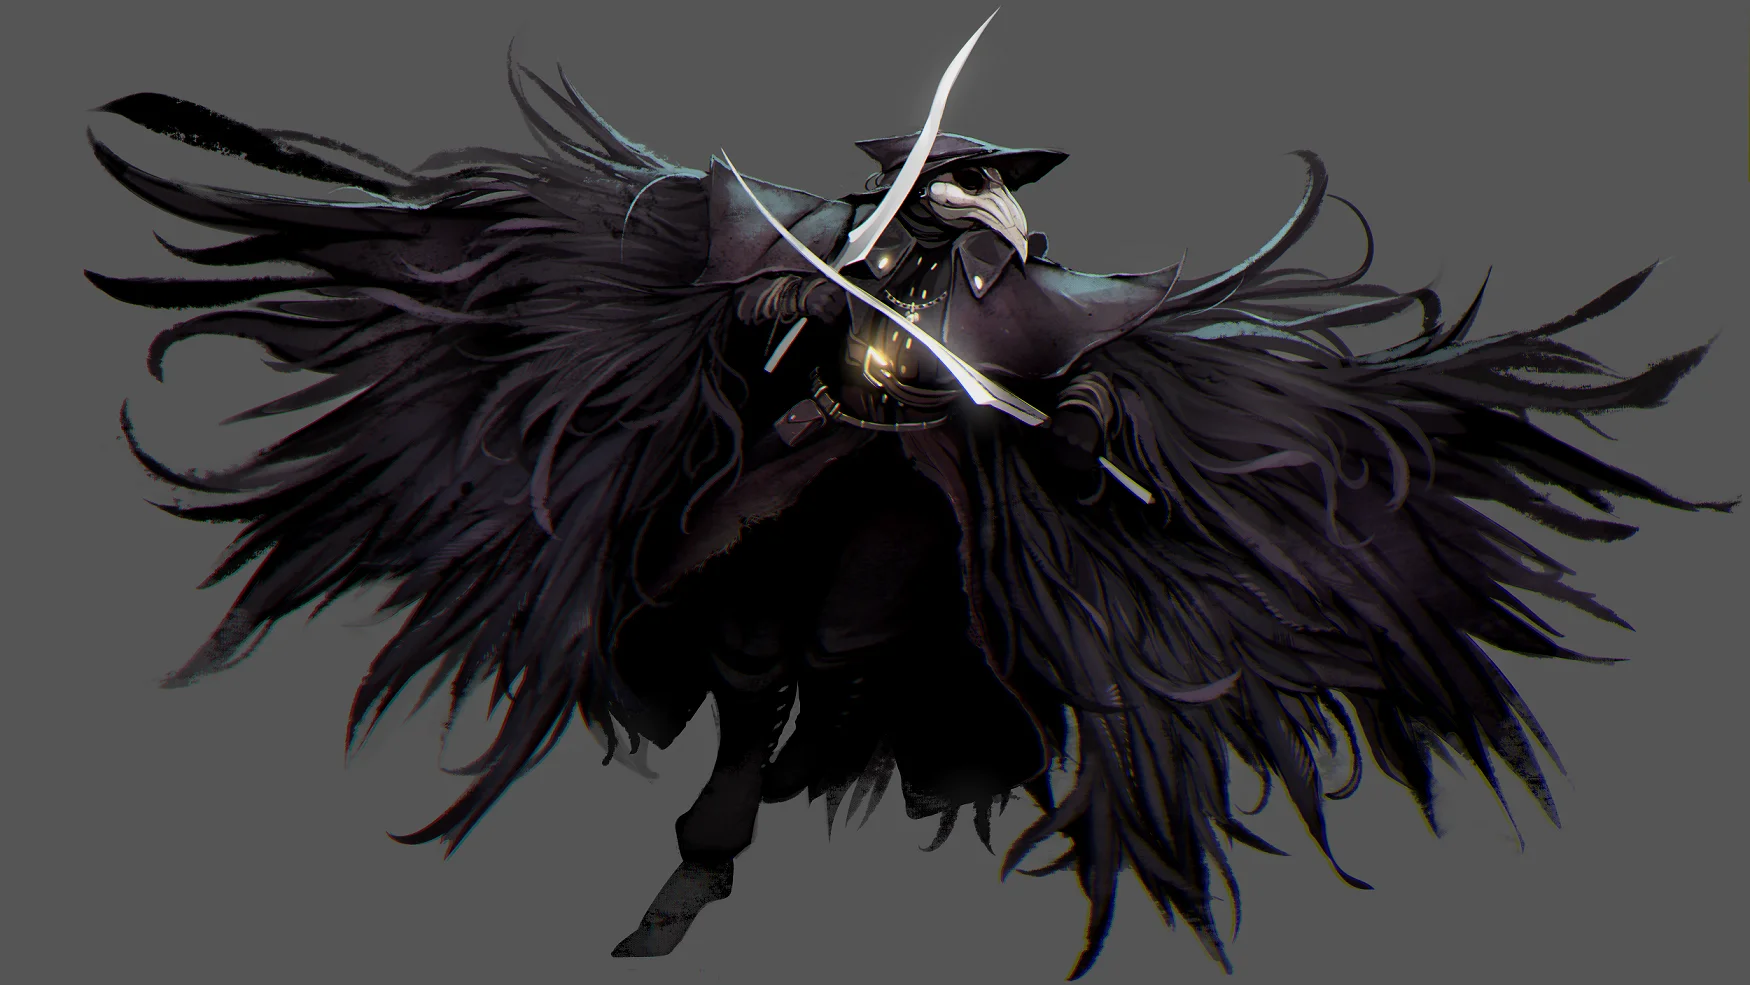 游戏《血源诅咒》中佩戴着鸟喙面具的猎人——“乌鸦”艾琳